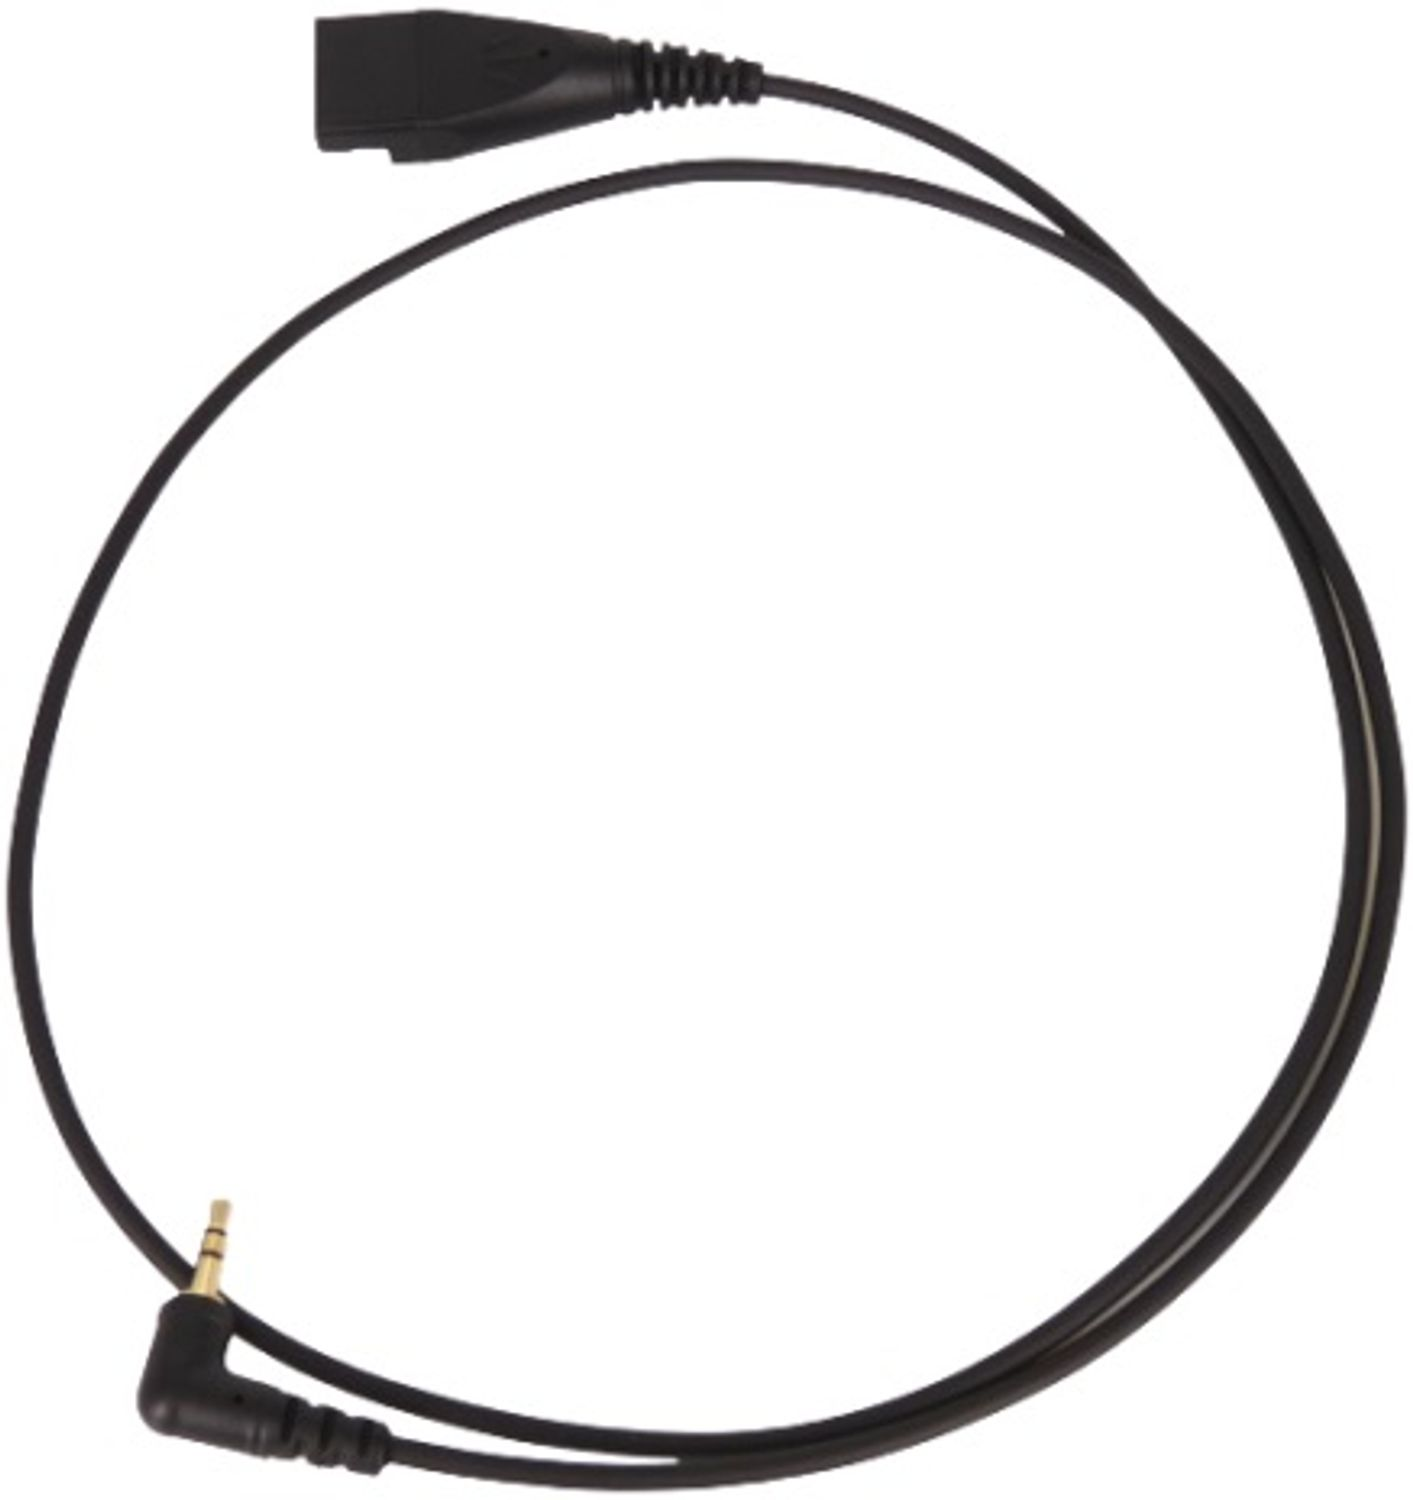 GEQUDIO 2,5mm-Klinke-Kabel kompatibel für mit Headset Telefon Zubehör Schwarz Panasonic Gigaset